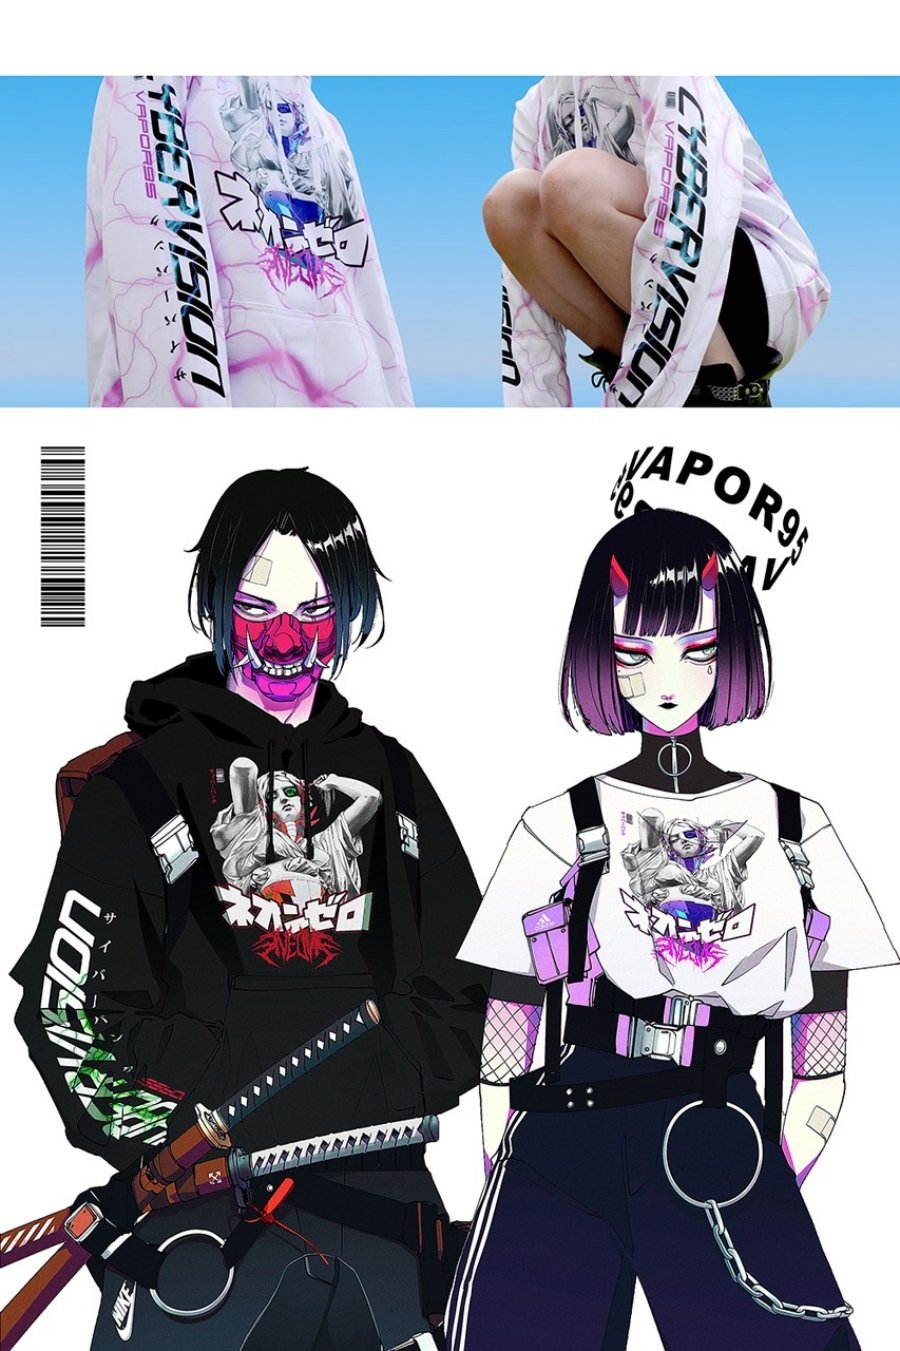 Ilustraciones con lookbook oficial de la ropa colaborativa entre Vapor95 y Vinne art